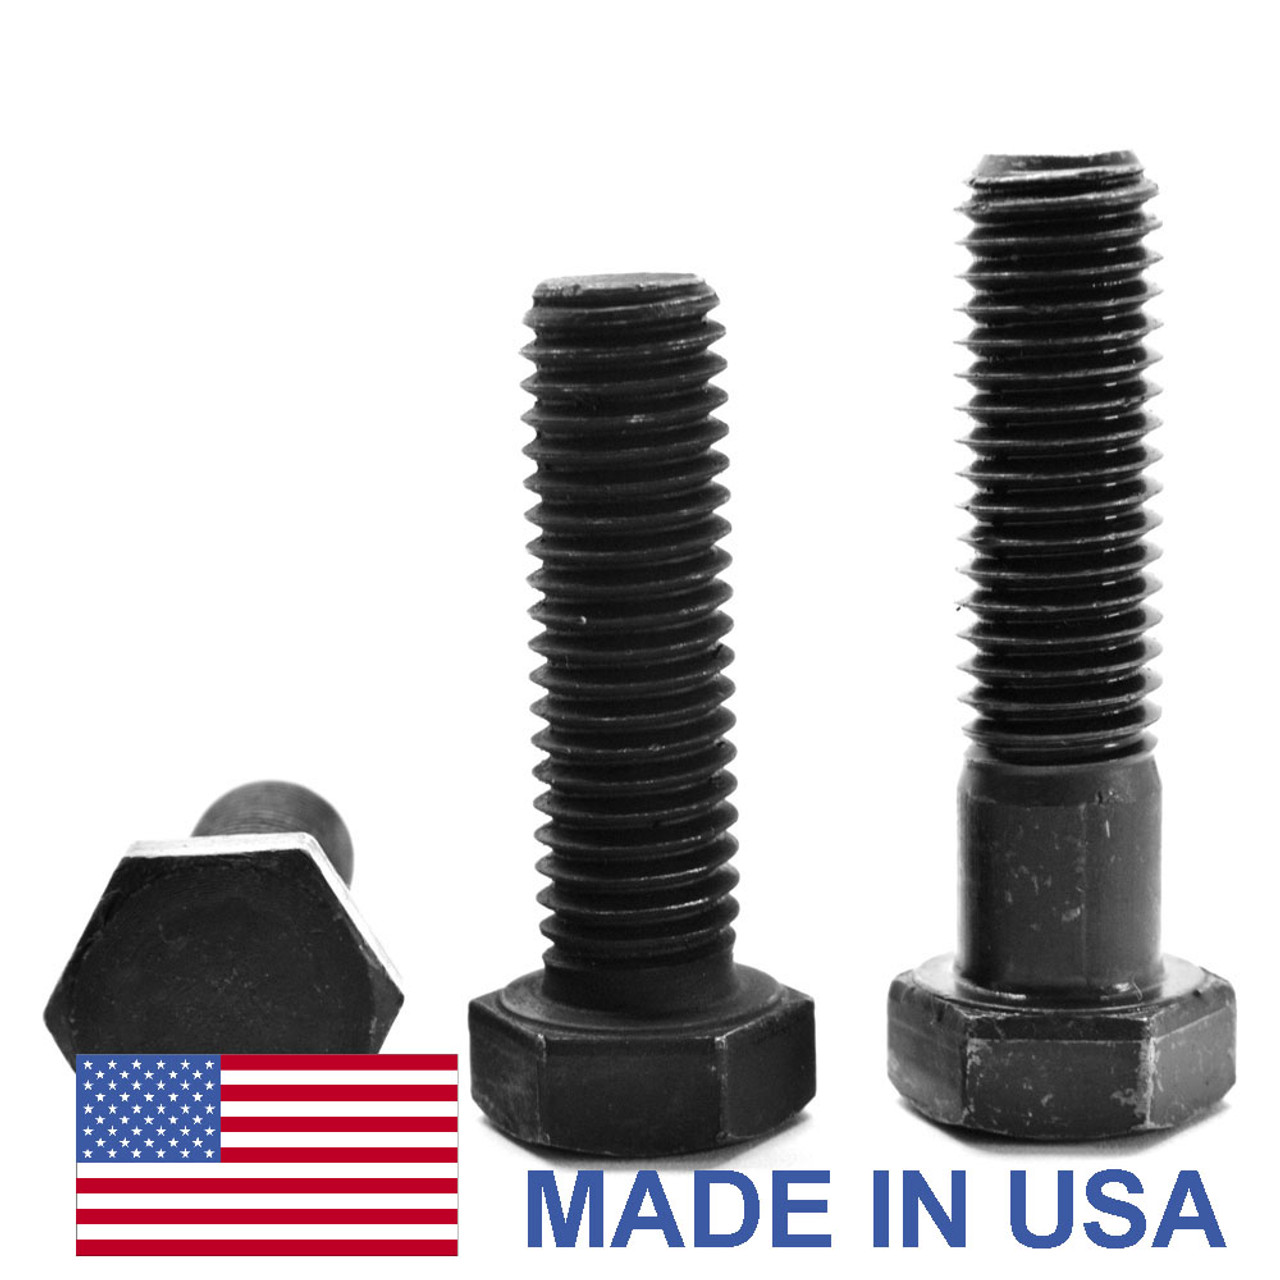 1"-14 x 5 1/2" (PT) UNS Thread Grade 5 Hex Cap Screw (Bolt) - USA Medium Carbon Steel Black Oxide